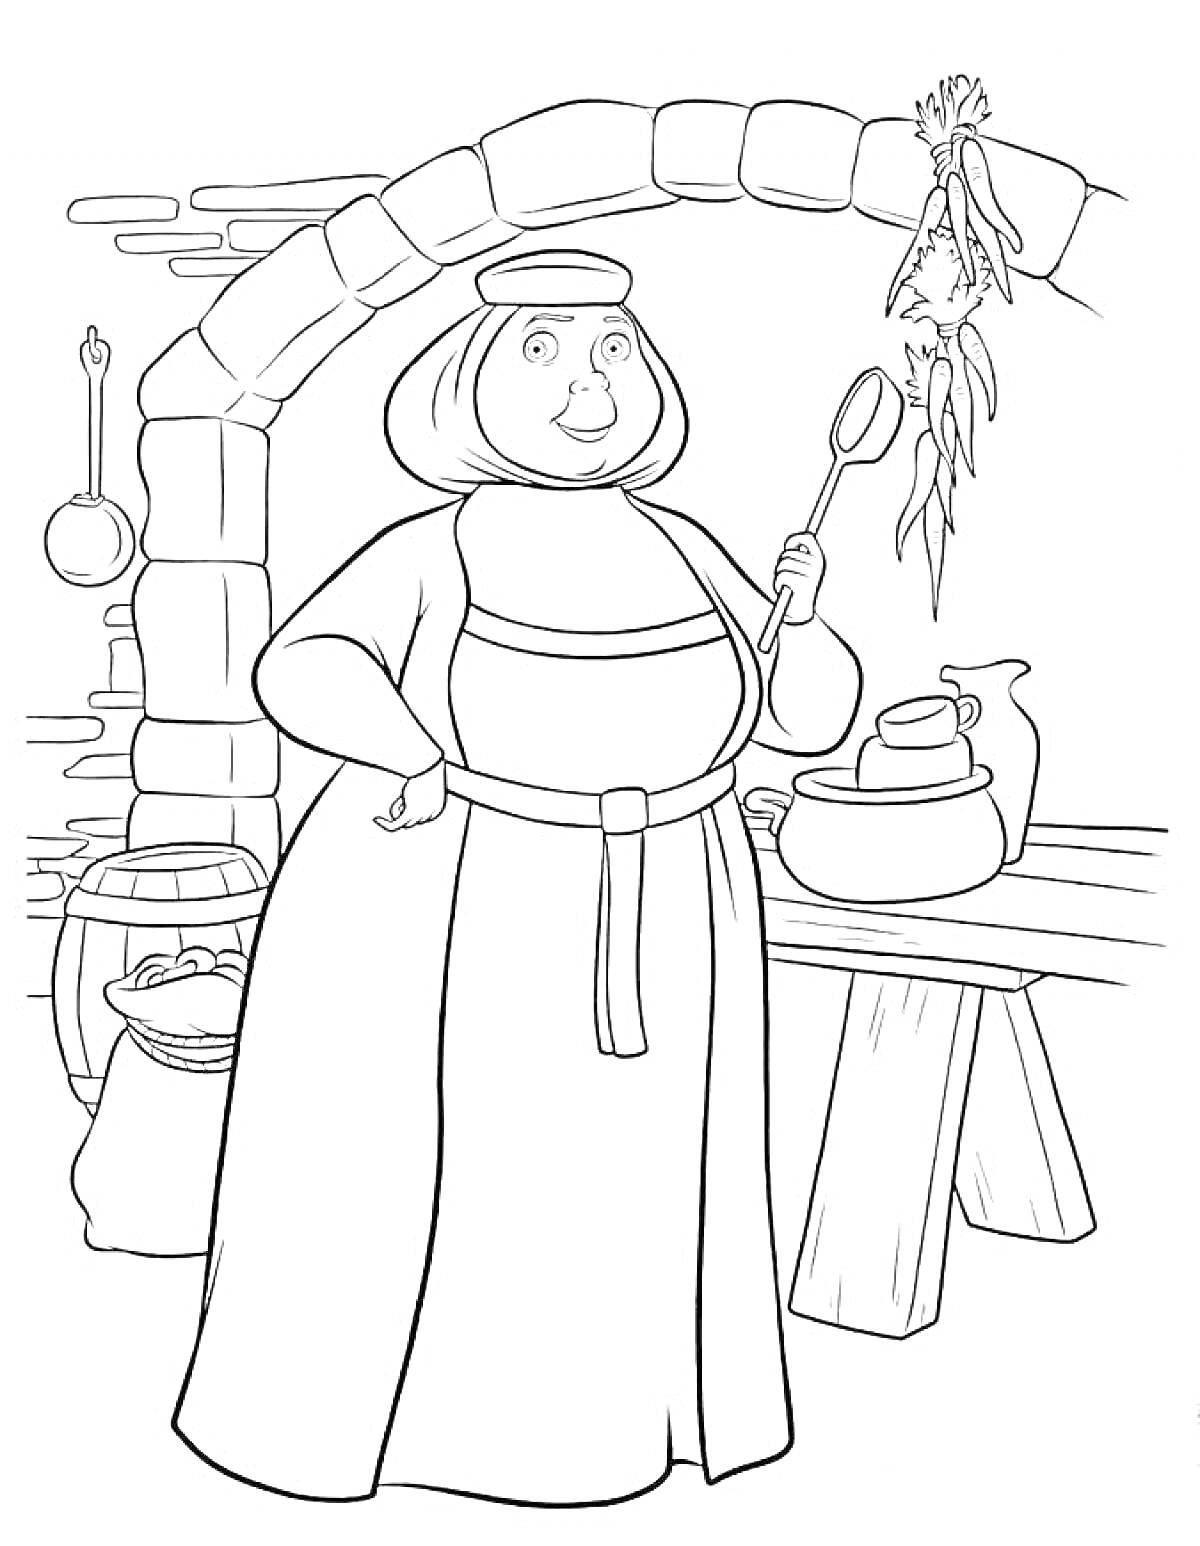 Женщина на кухне у печи с поварешкой, окружающие предметы: горшок, мешок, стол, корзина с продуктами, связка трав, сковорода